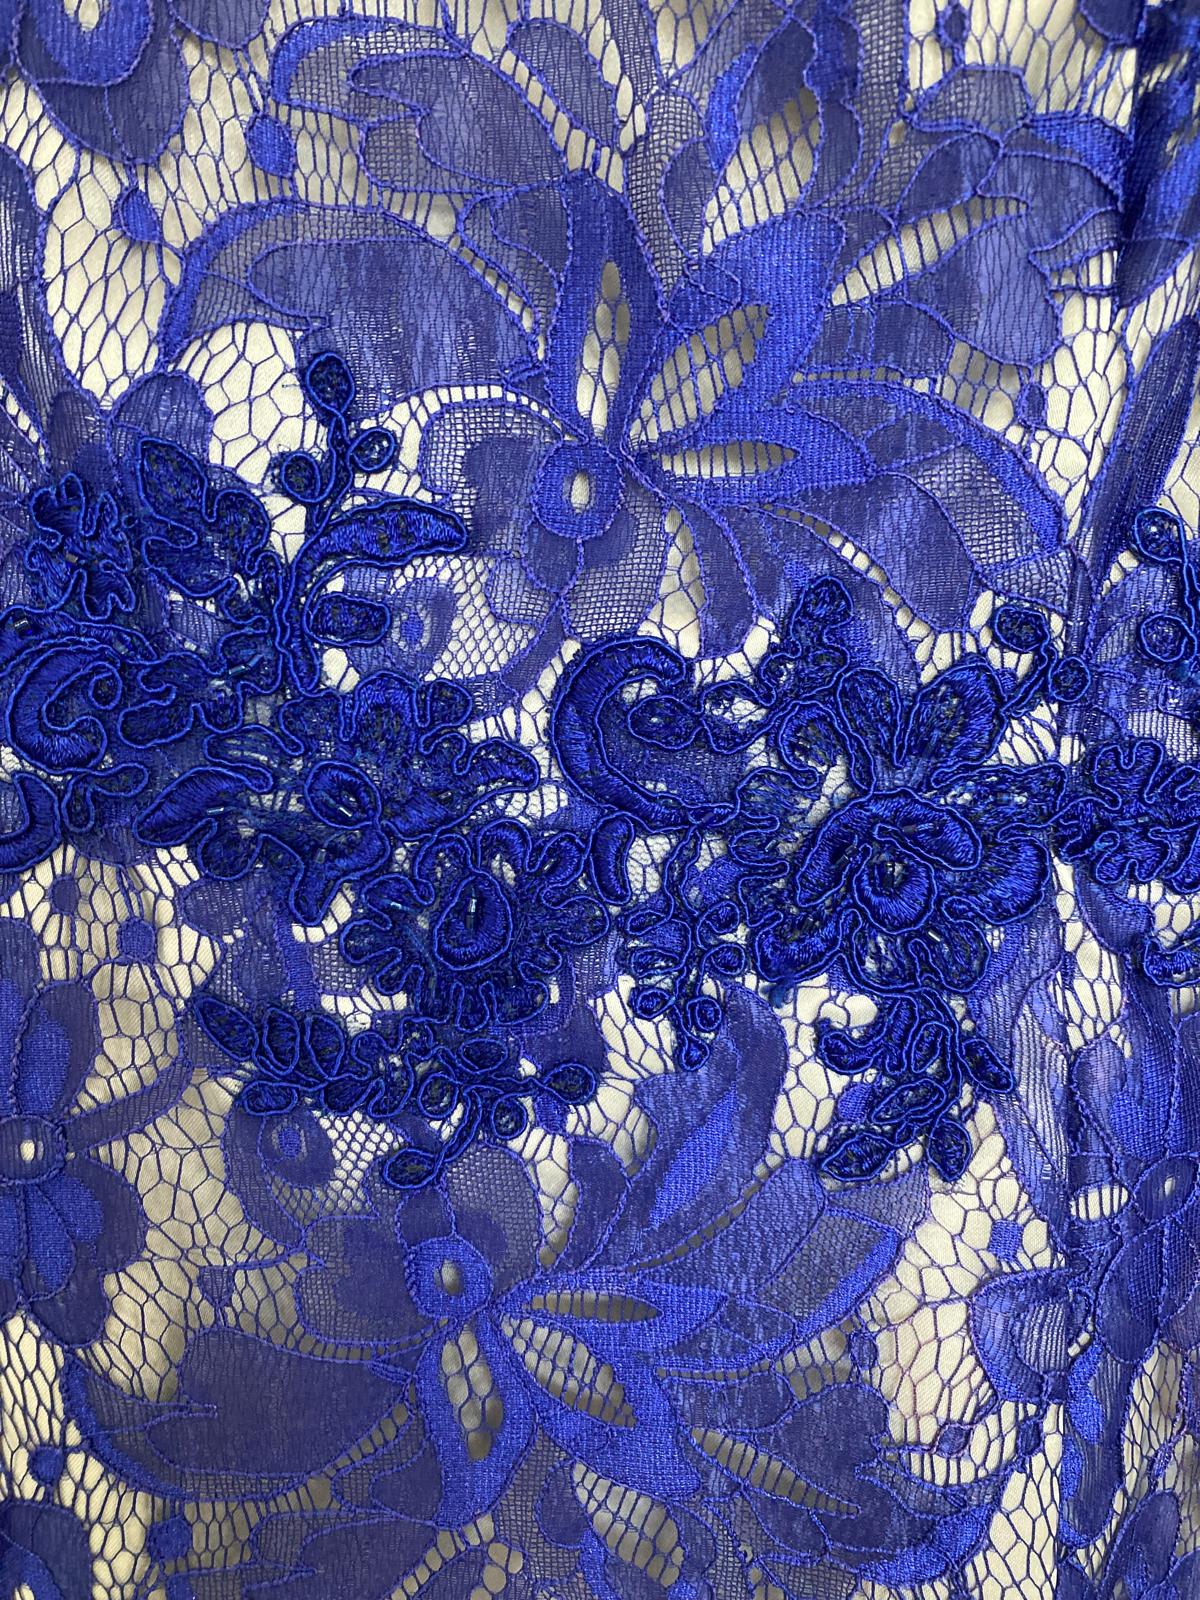 Marfil cobalt blue event dress - Maya Maya Ltd